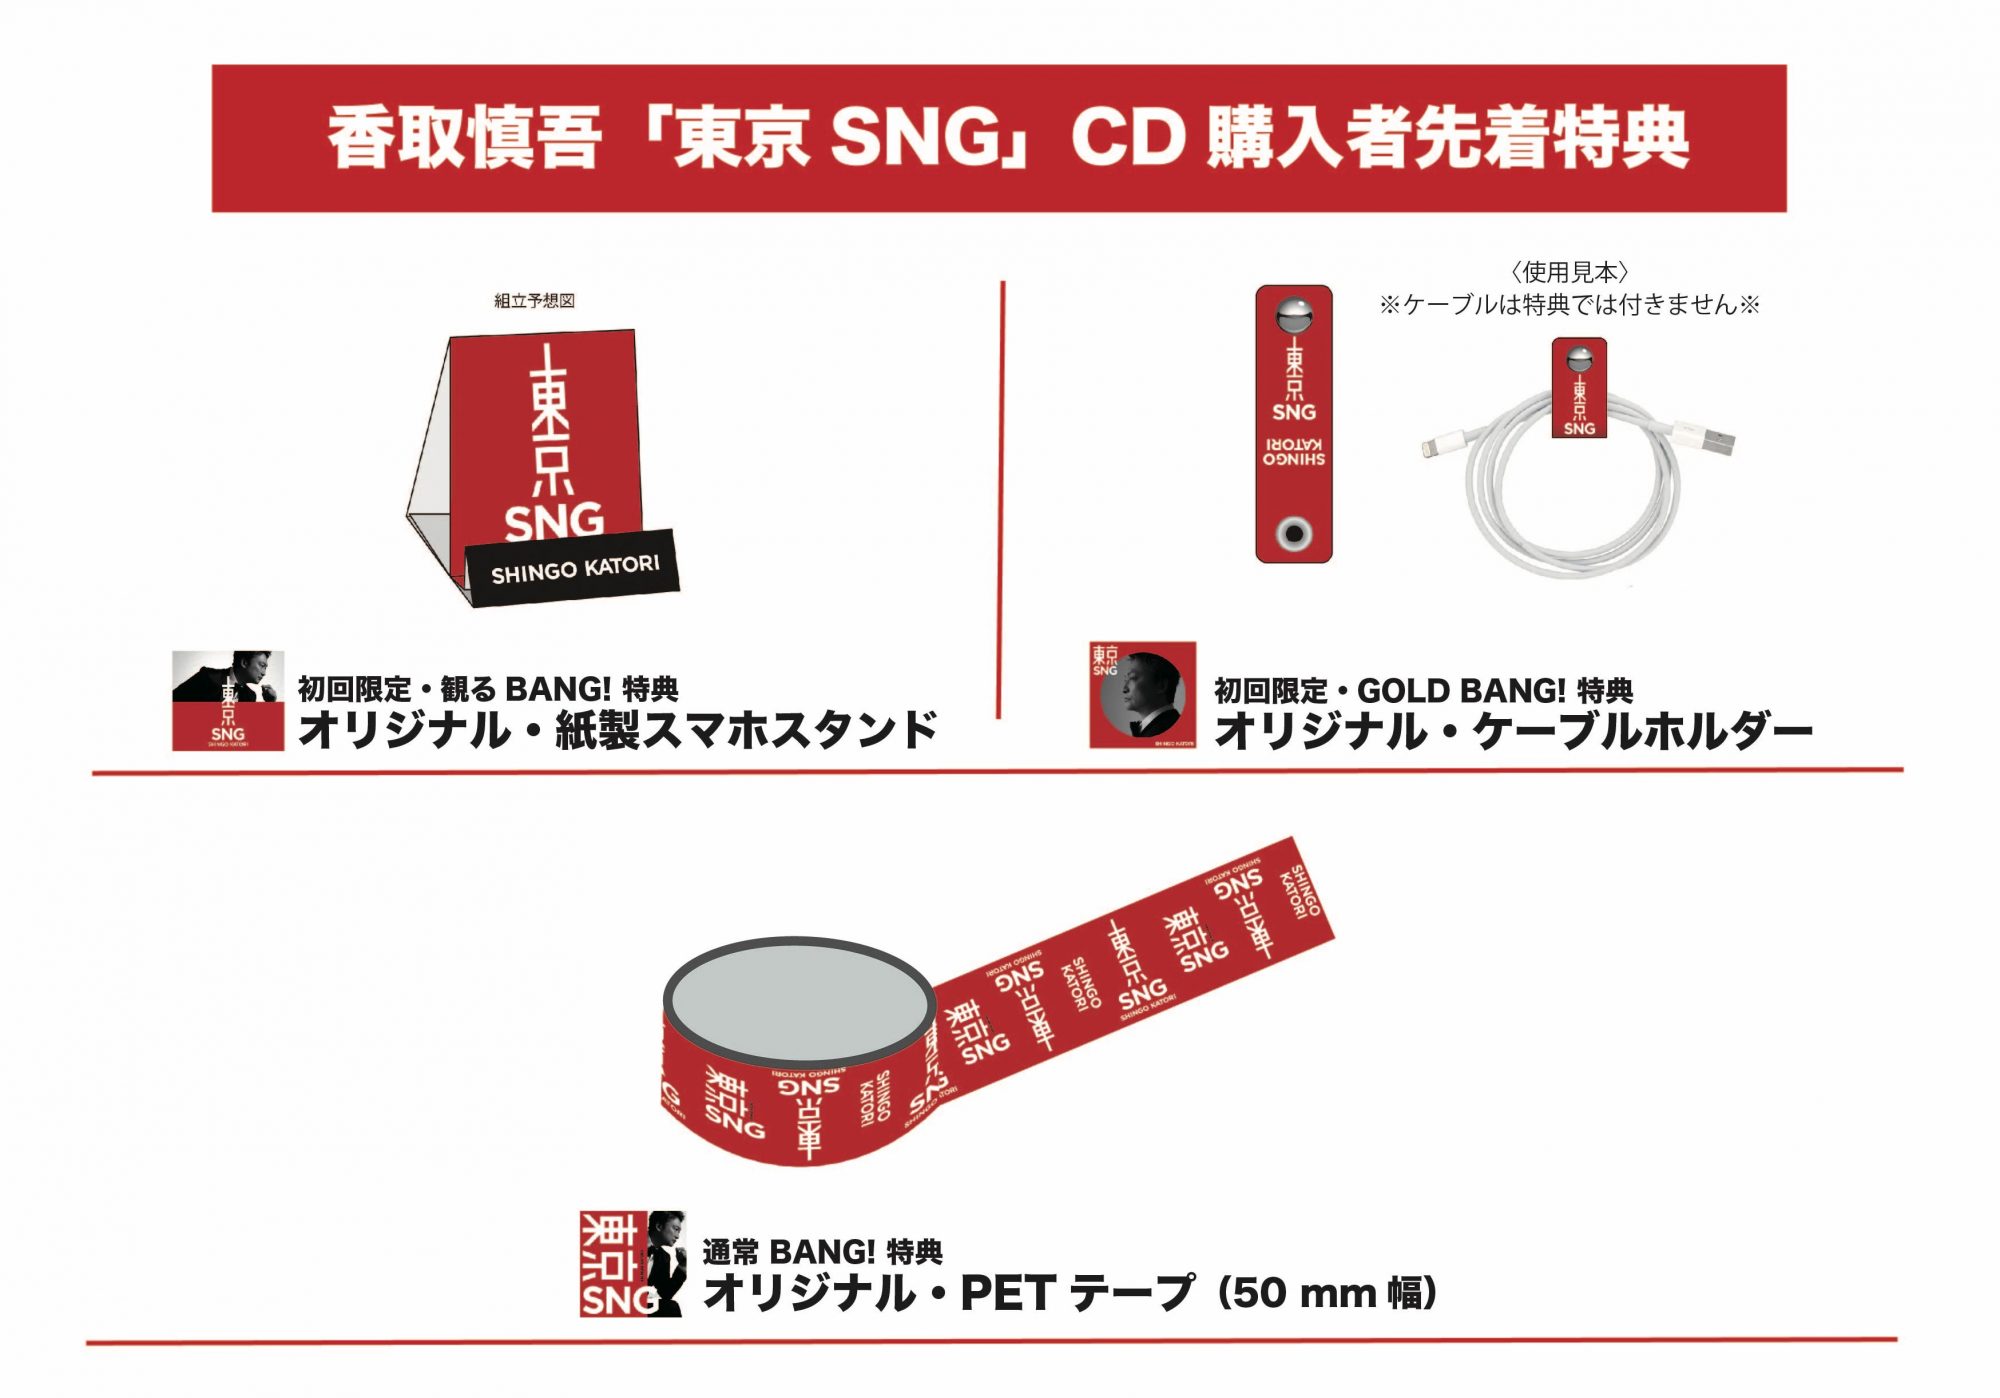 香取慎吾 2ndアルバム「東京SNG」CDご購入者対象のスペシャル特典が